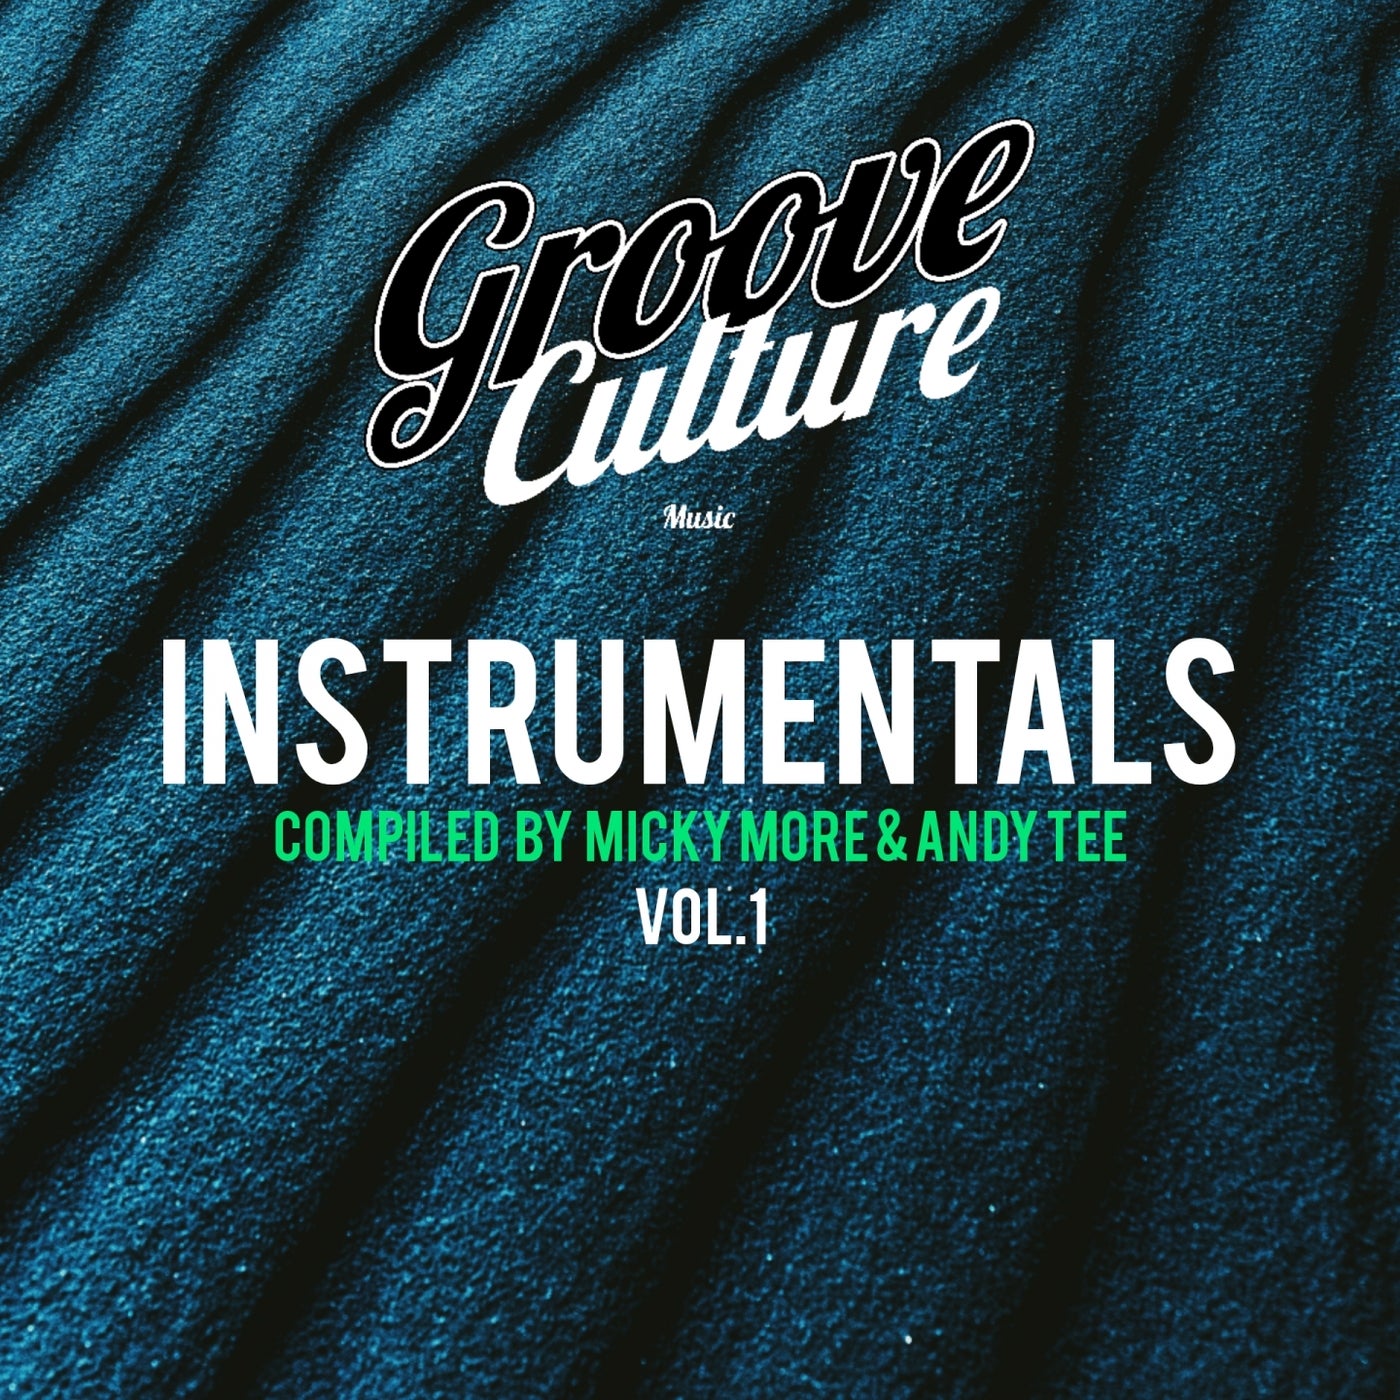 Groove Culture Instrumentals, Vol. 1